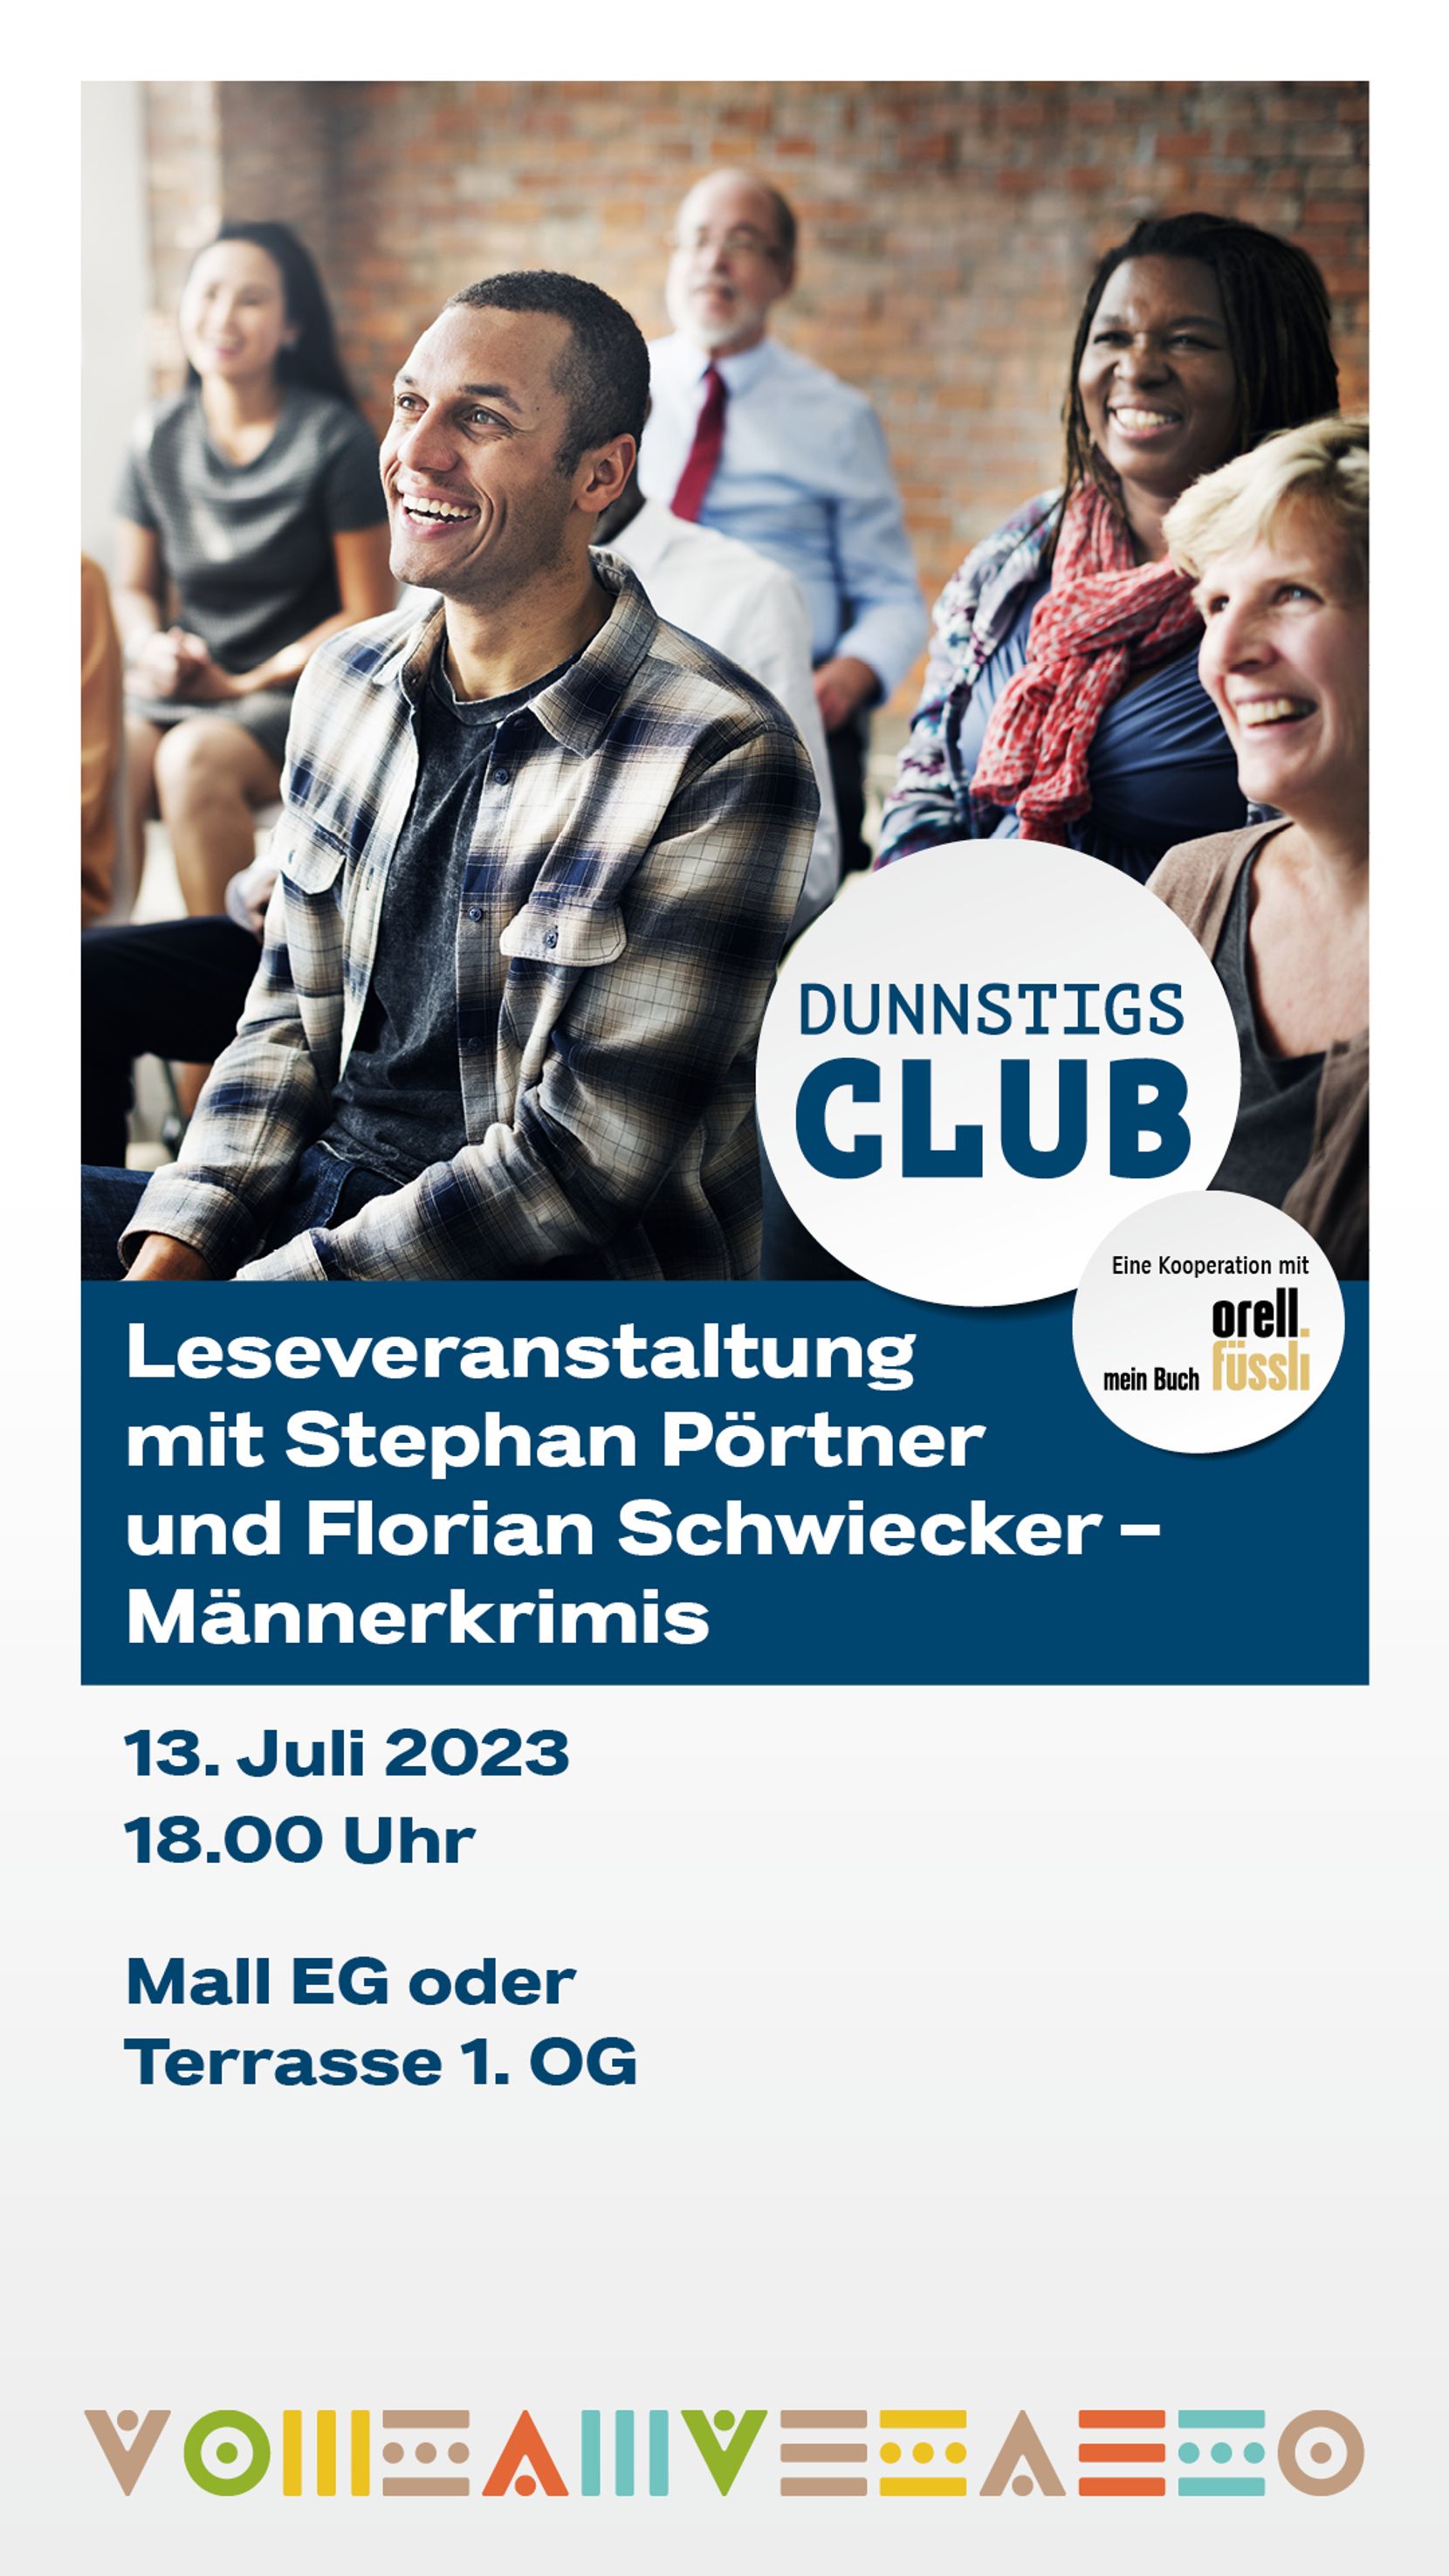 Die Grafik zeigt den Flyer des Dunnstigs Clubs vom 13. Juli mit Stephan Pörtner und Florian Schwiecker.